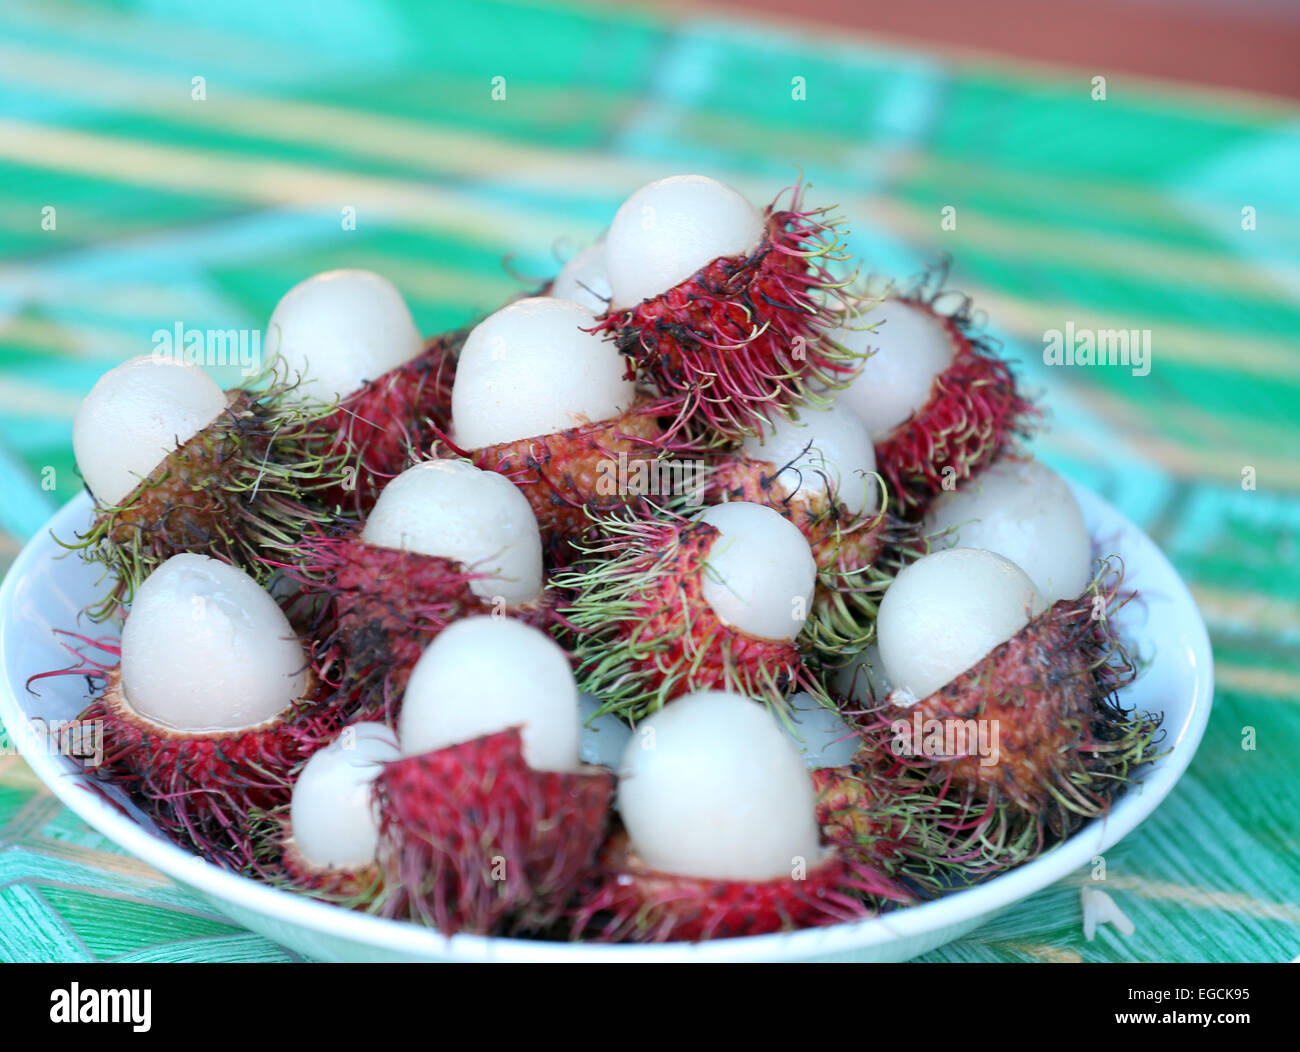 Rambutan fruit is peeled in dish. Stock Photo